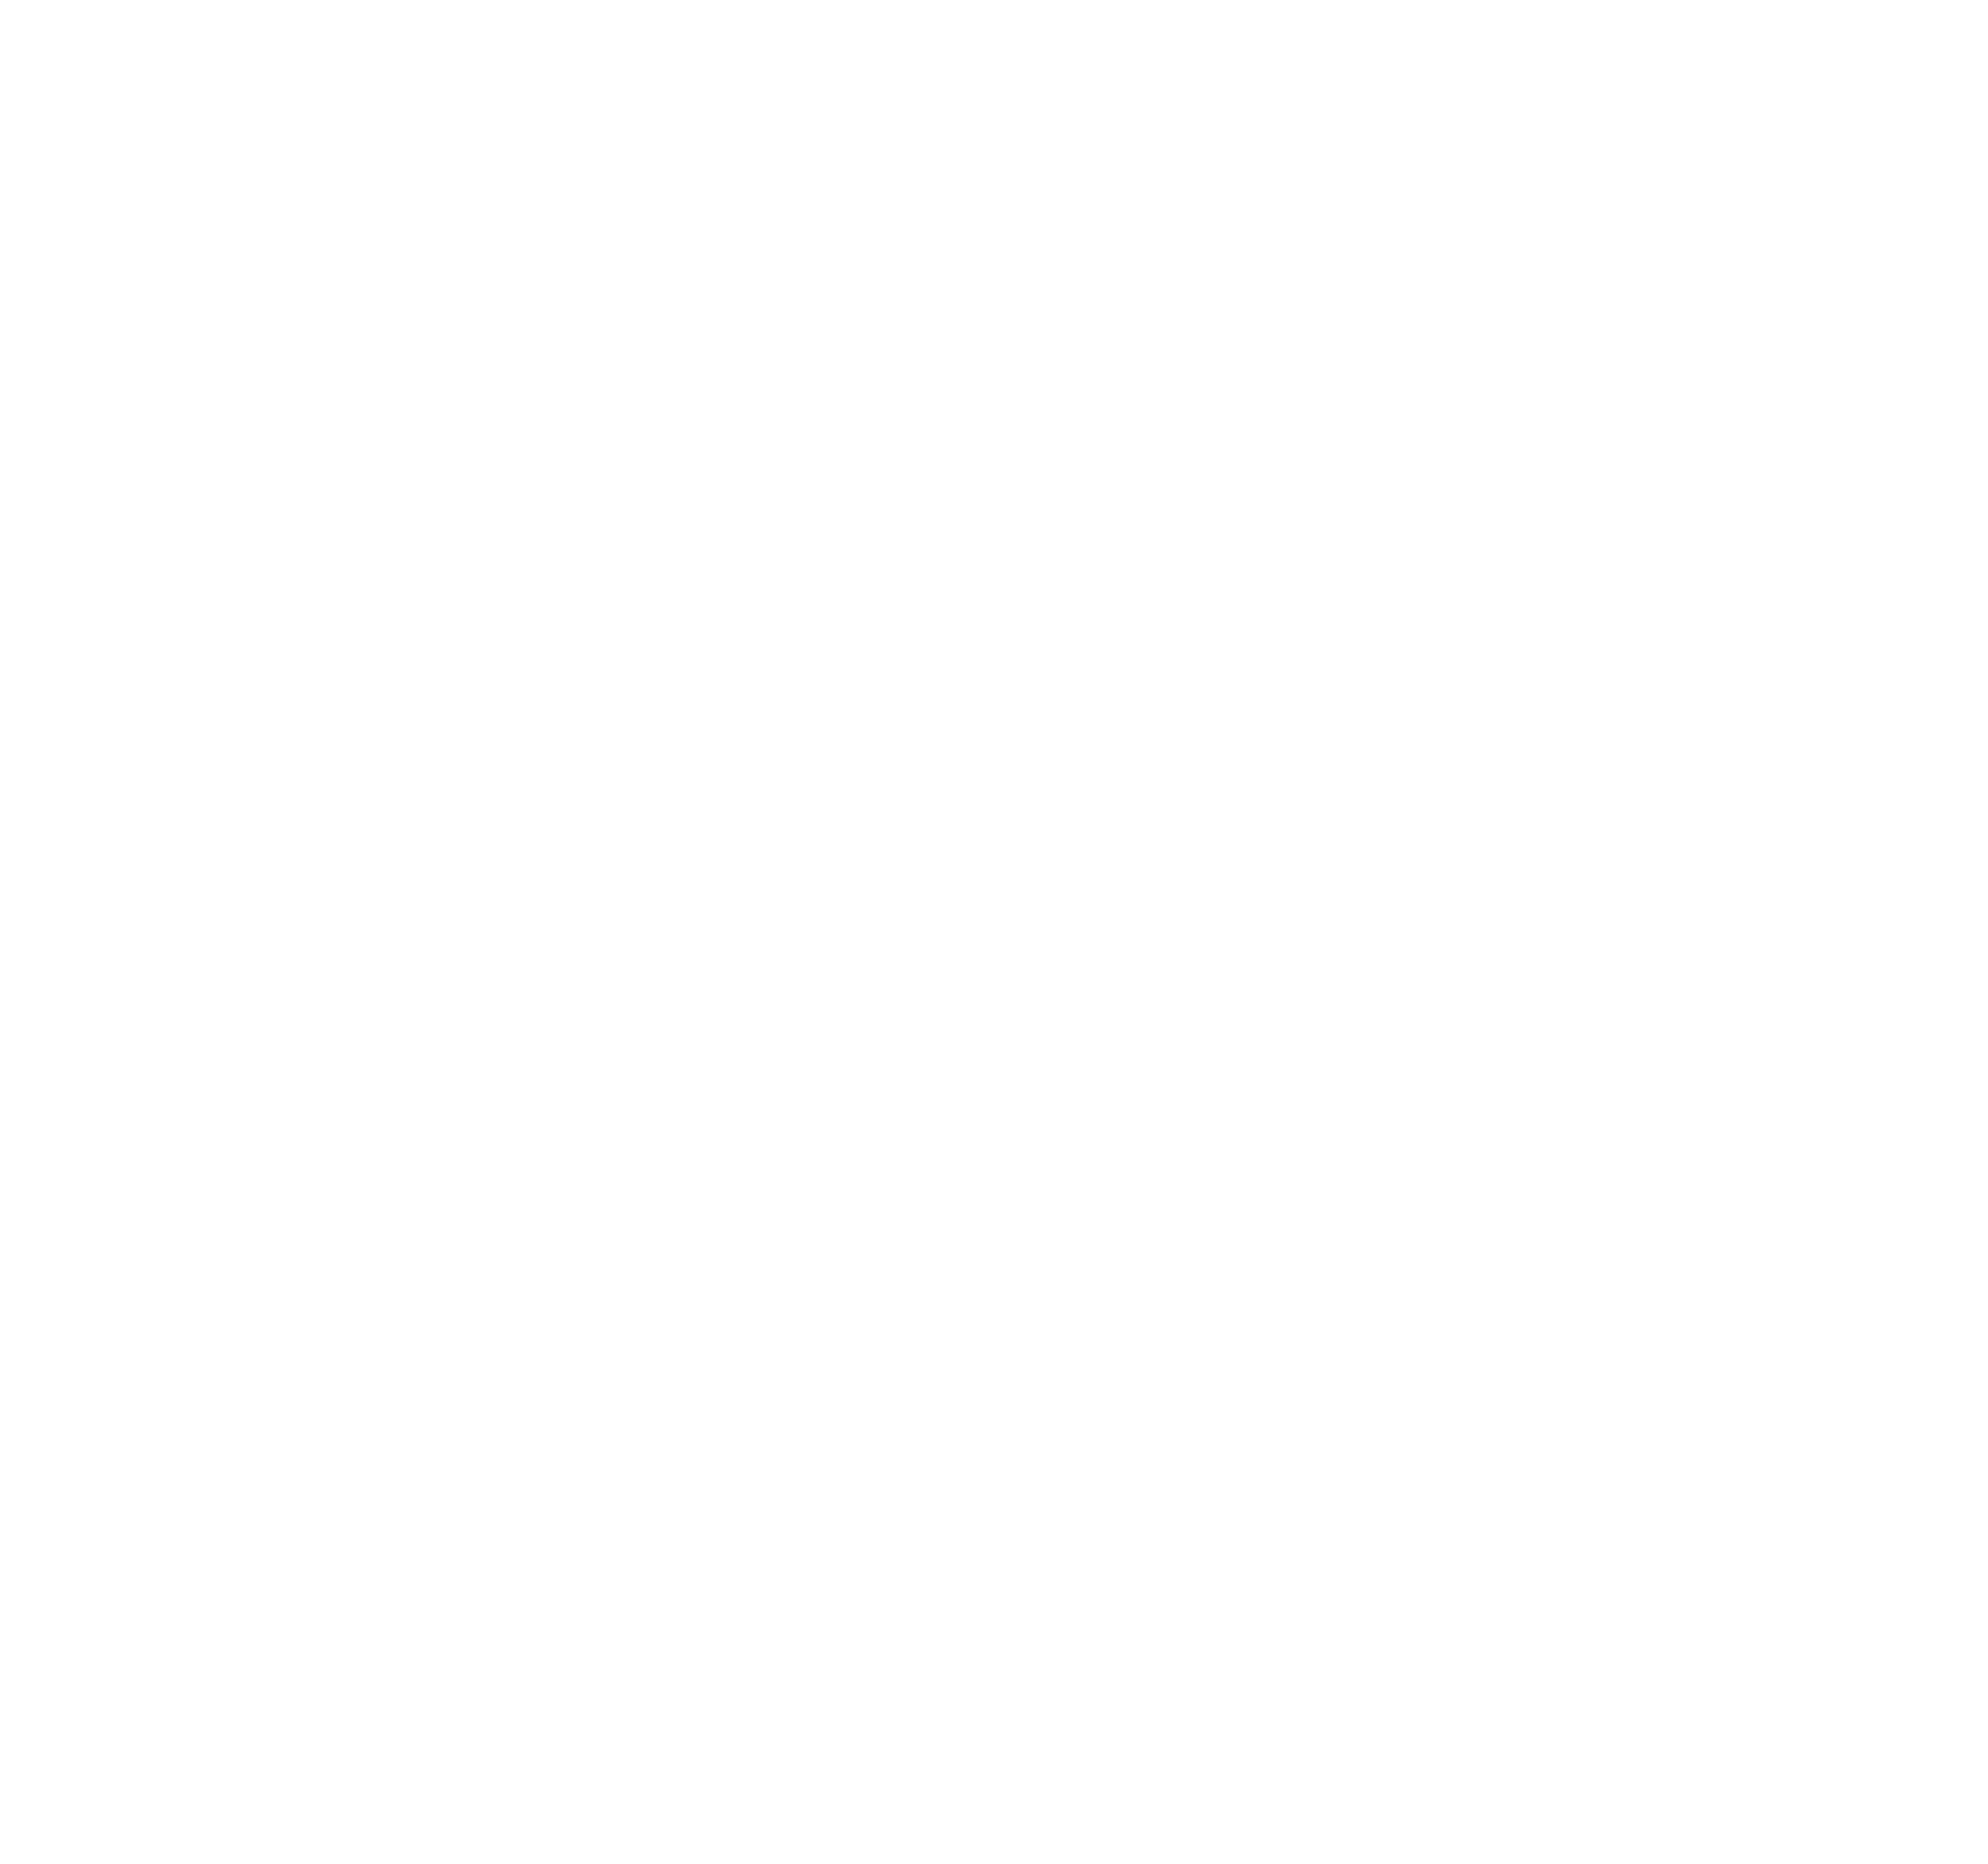 Wipe me away